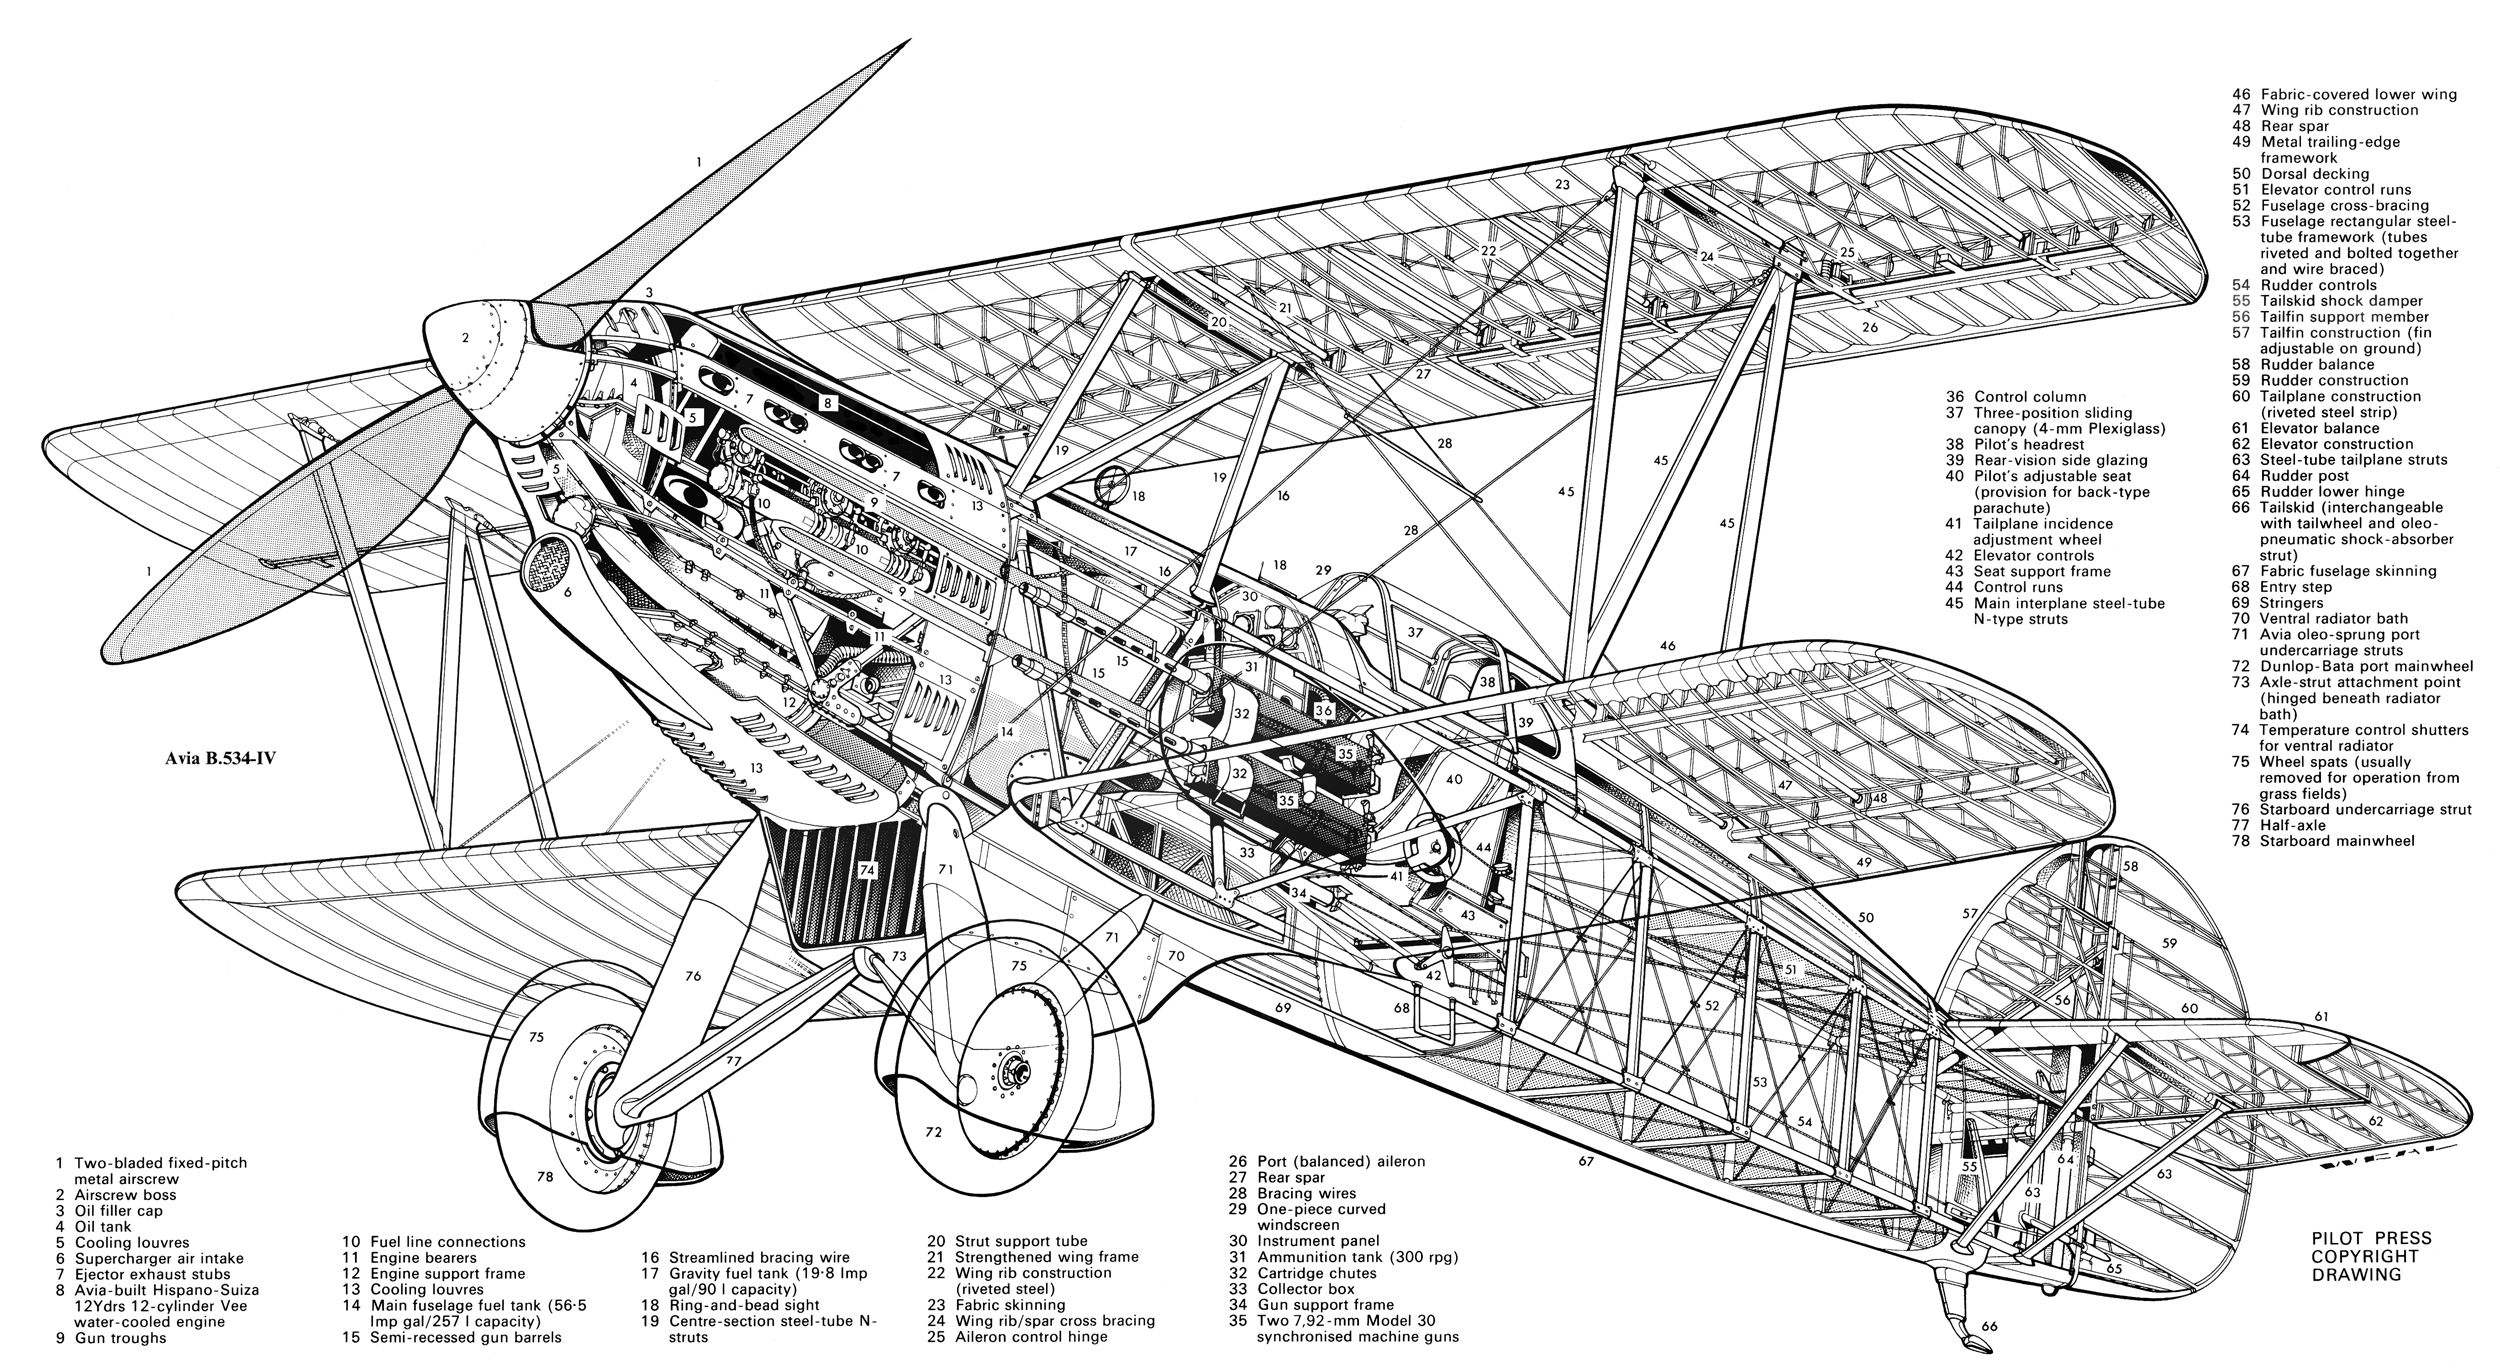 aviab534iv1935airintl07 | Aircraft of World War II - WW2Aircraft.net Forums